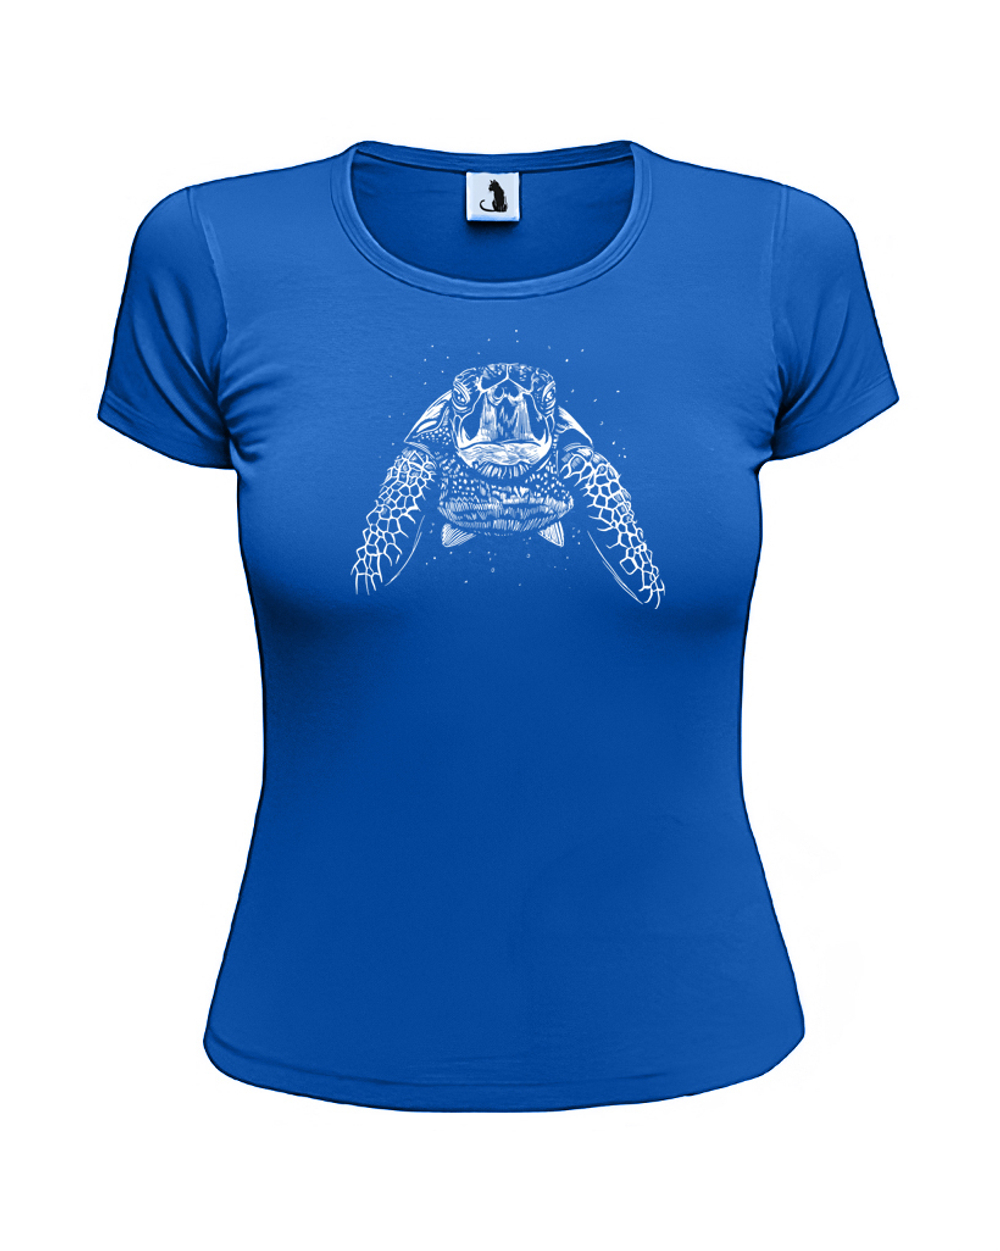 Футболка с черепахой женская приталенная синяя с белым рисунком